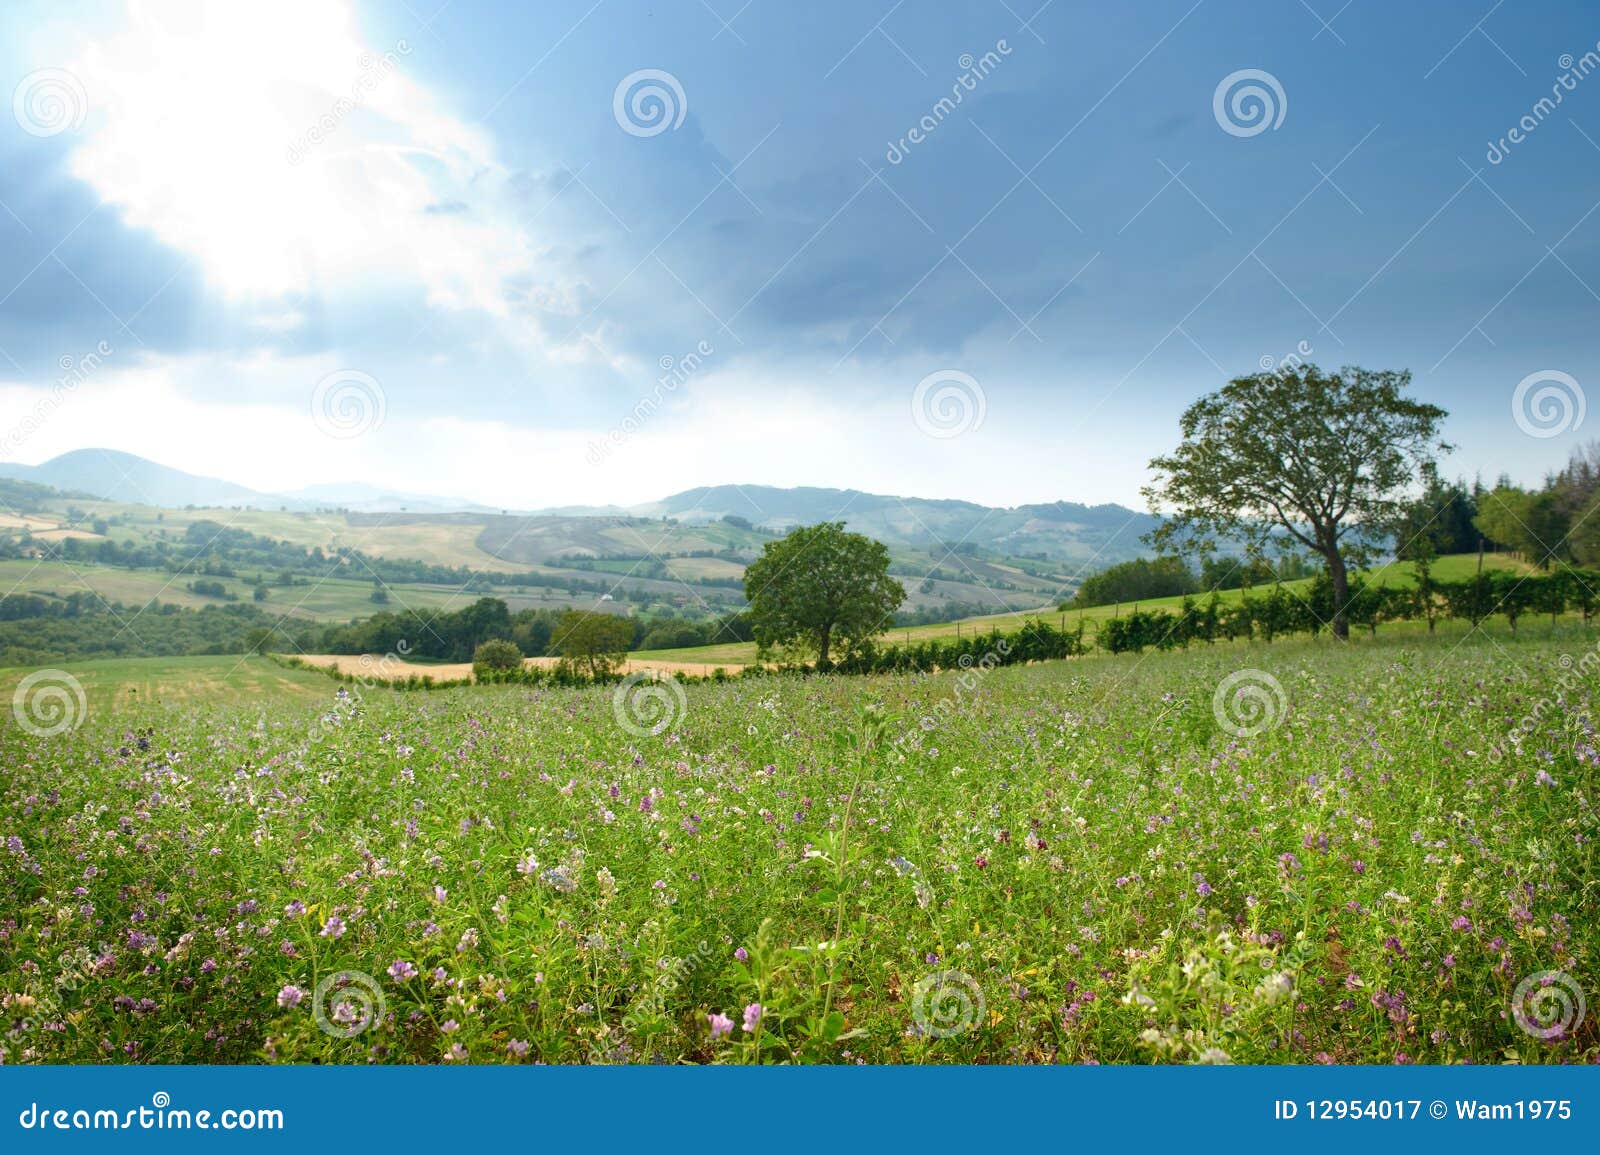 picturesque rural landscape